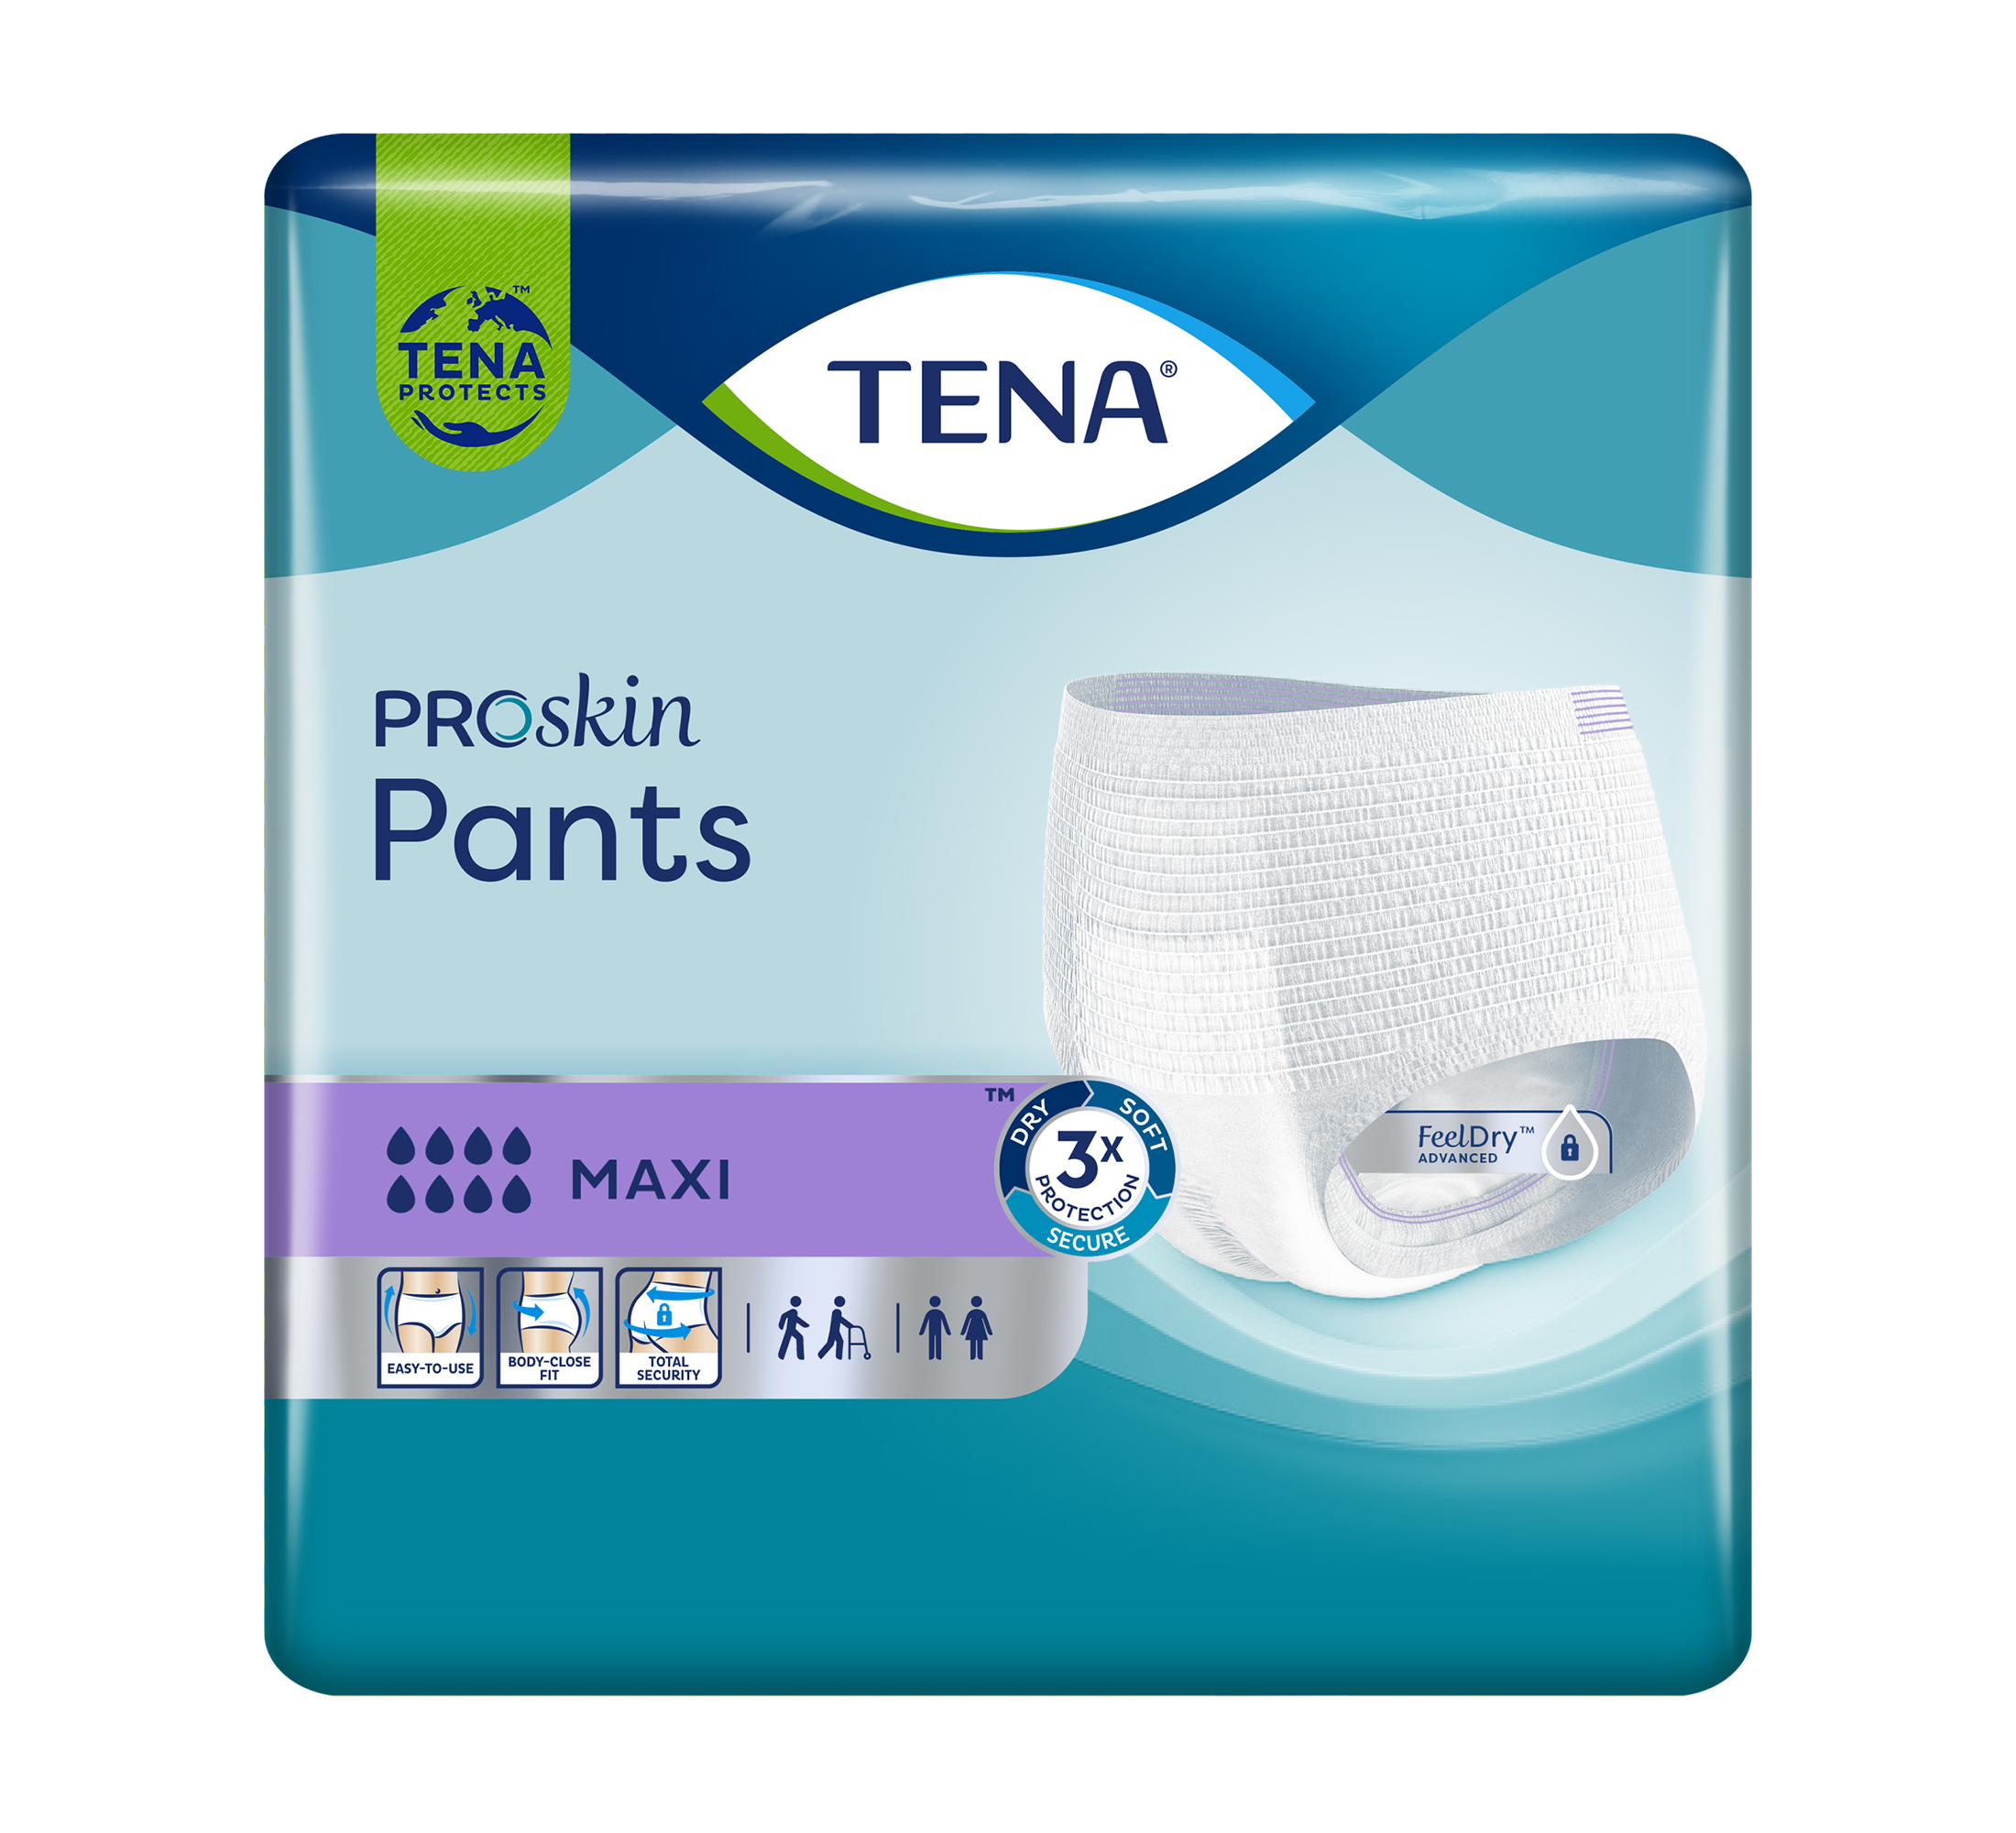 TENA ProSkin Pants Maxi Einweghosen, Saugfähigkeit 8/8, Größe M, 10 Stk.